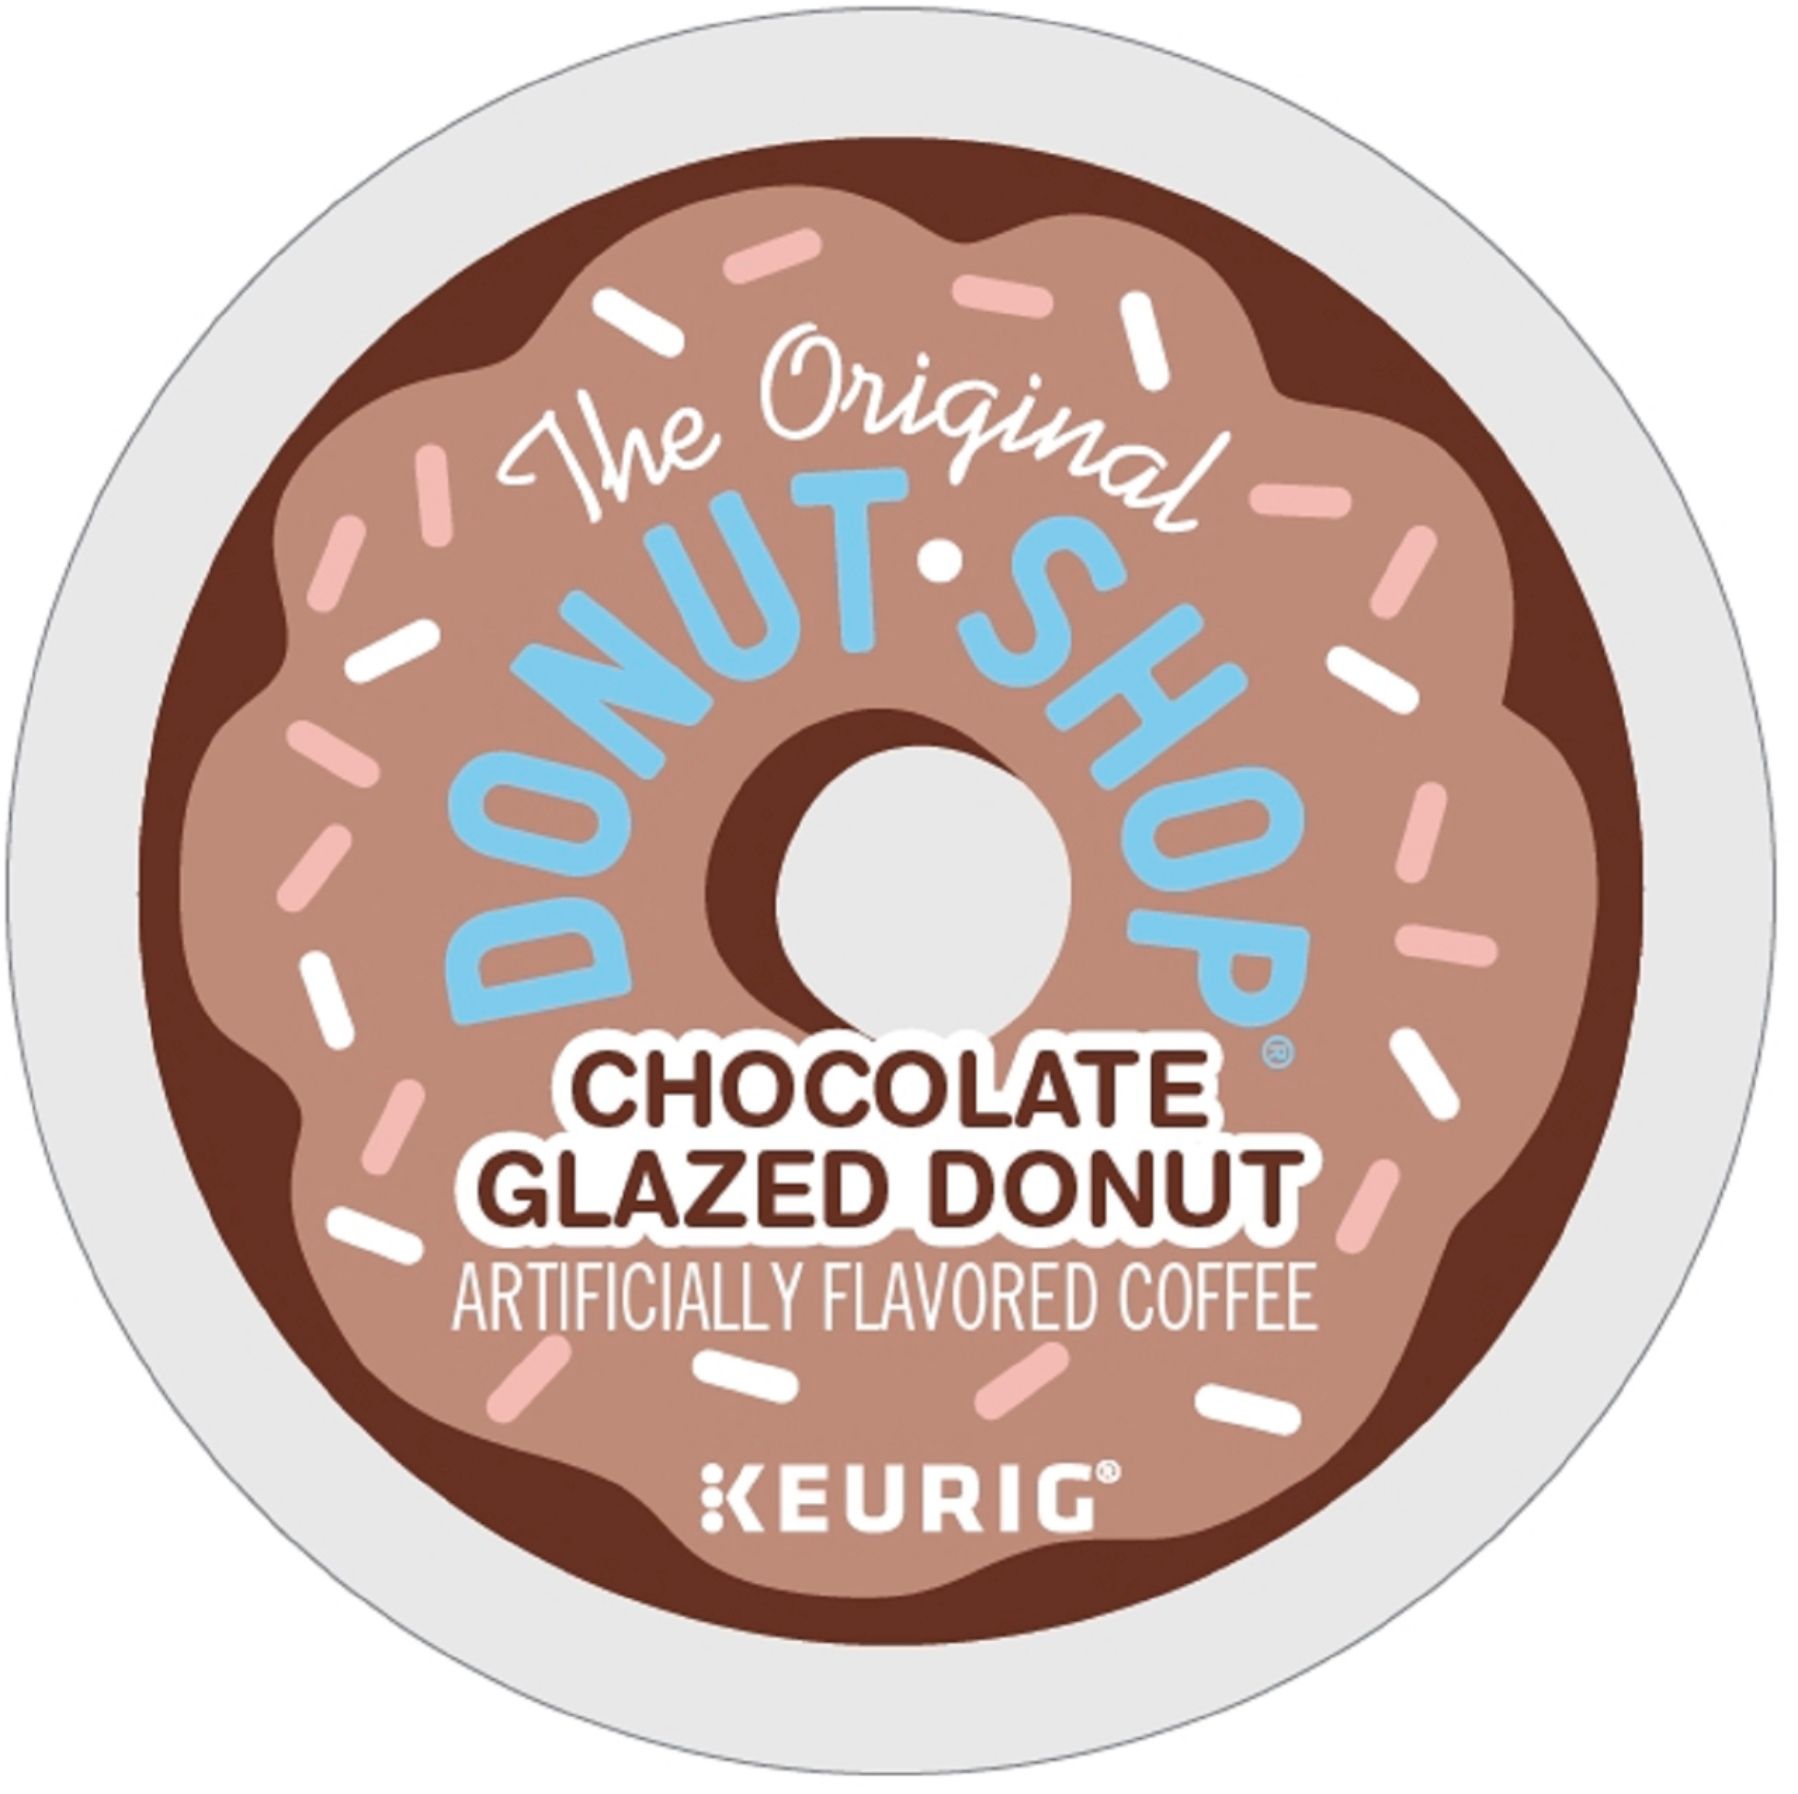 Best Buy: Keurig Donut Shop Sweet & Creamy Iced Coffee K-Cups (16-Pack)  8450-016